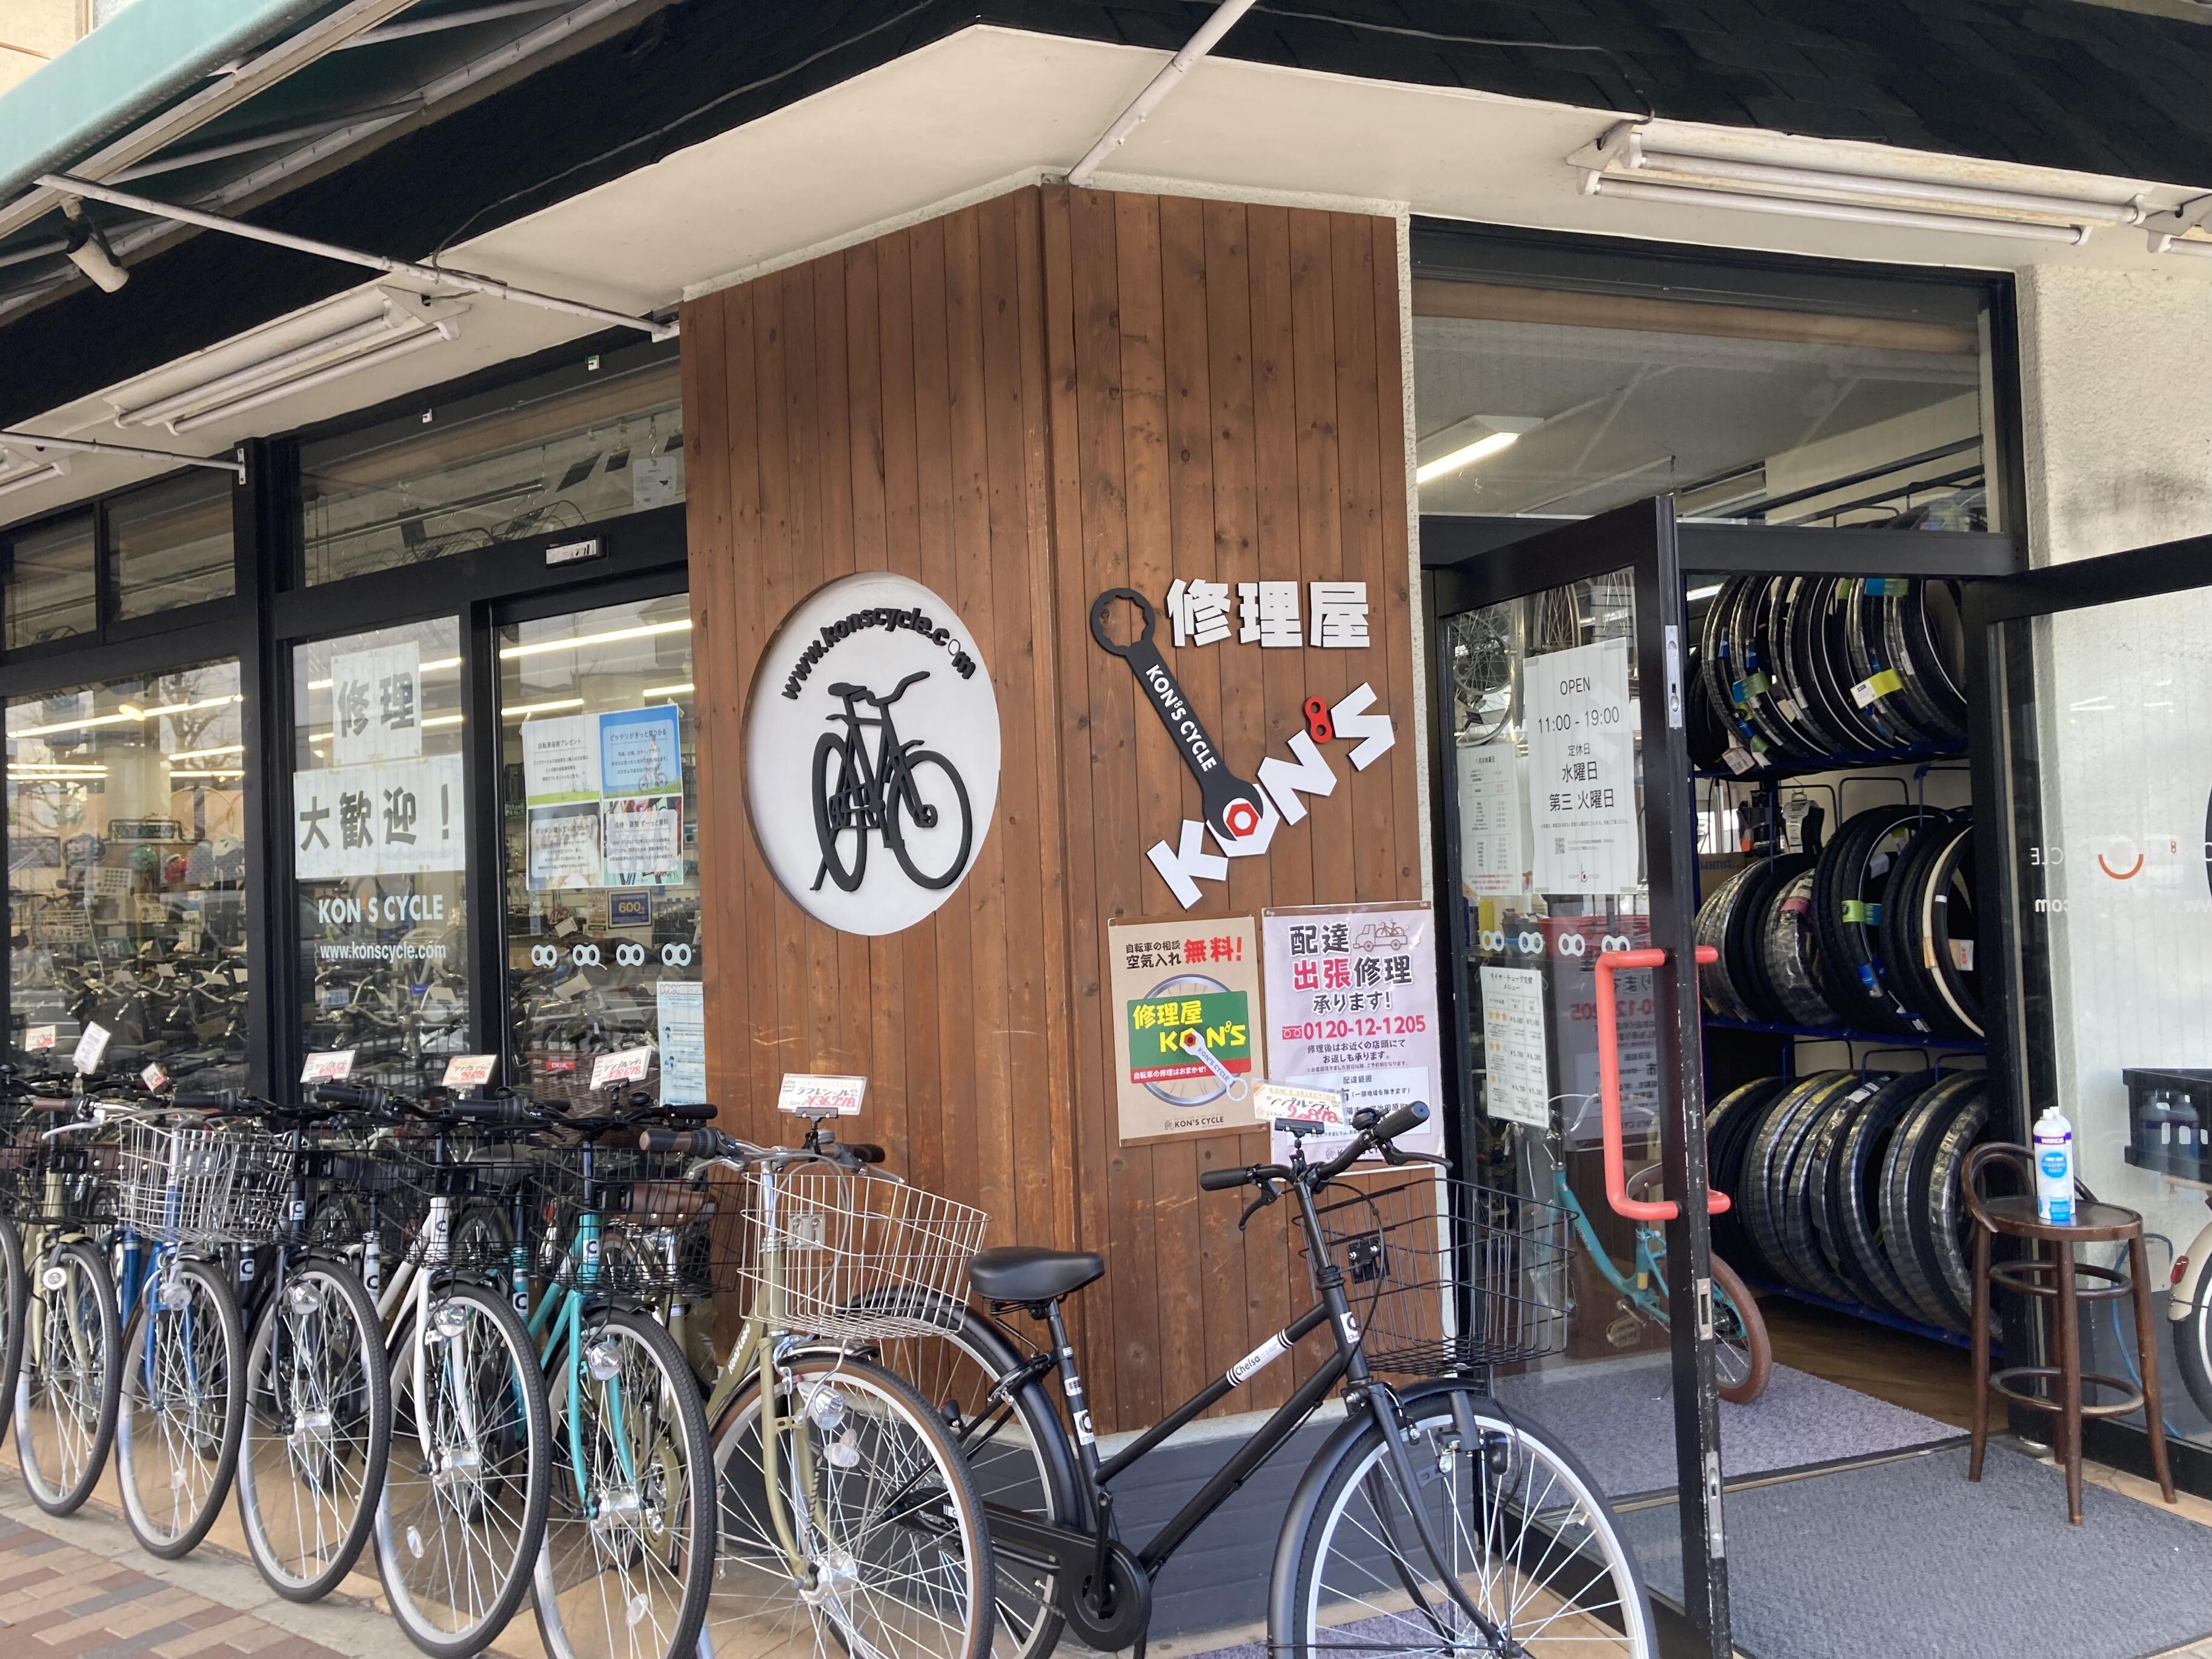 コンズサイクル 上七軒店 - 京都市上京区毘沙門町/自転車店 | Yahoo!マップ